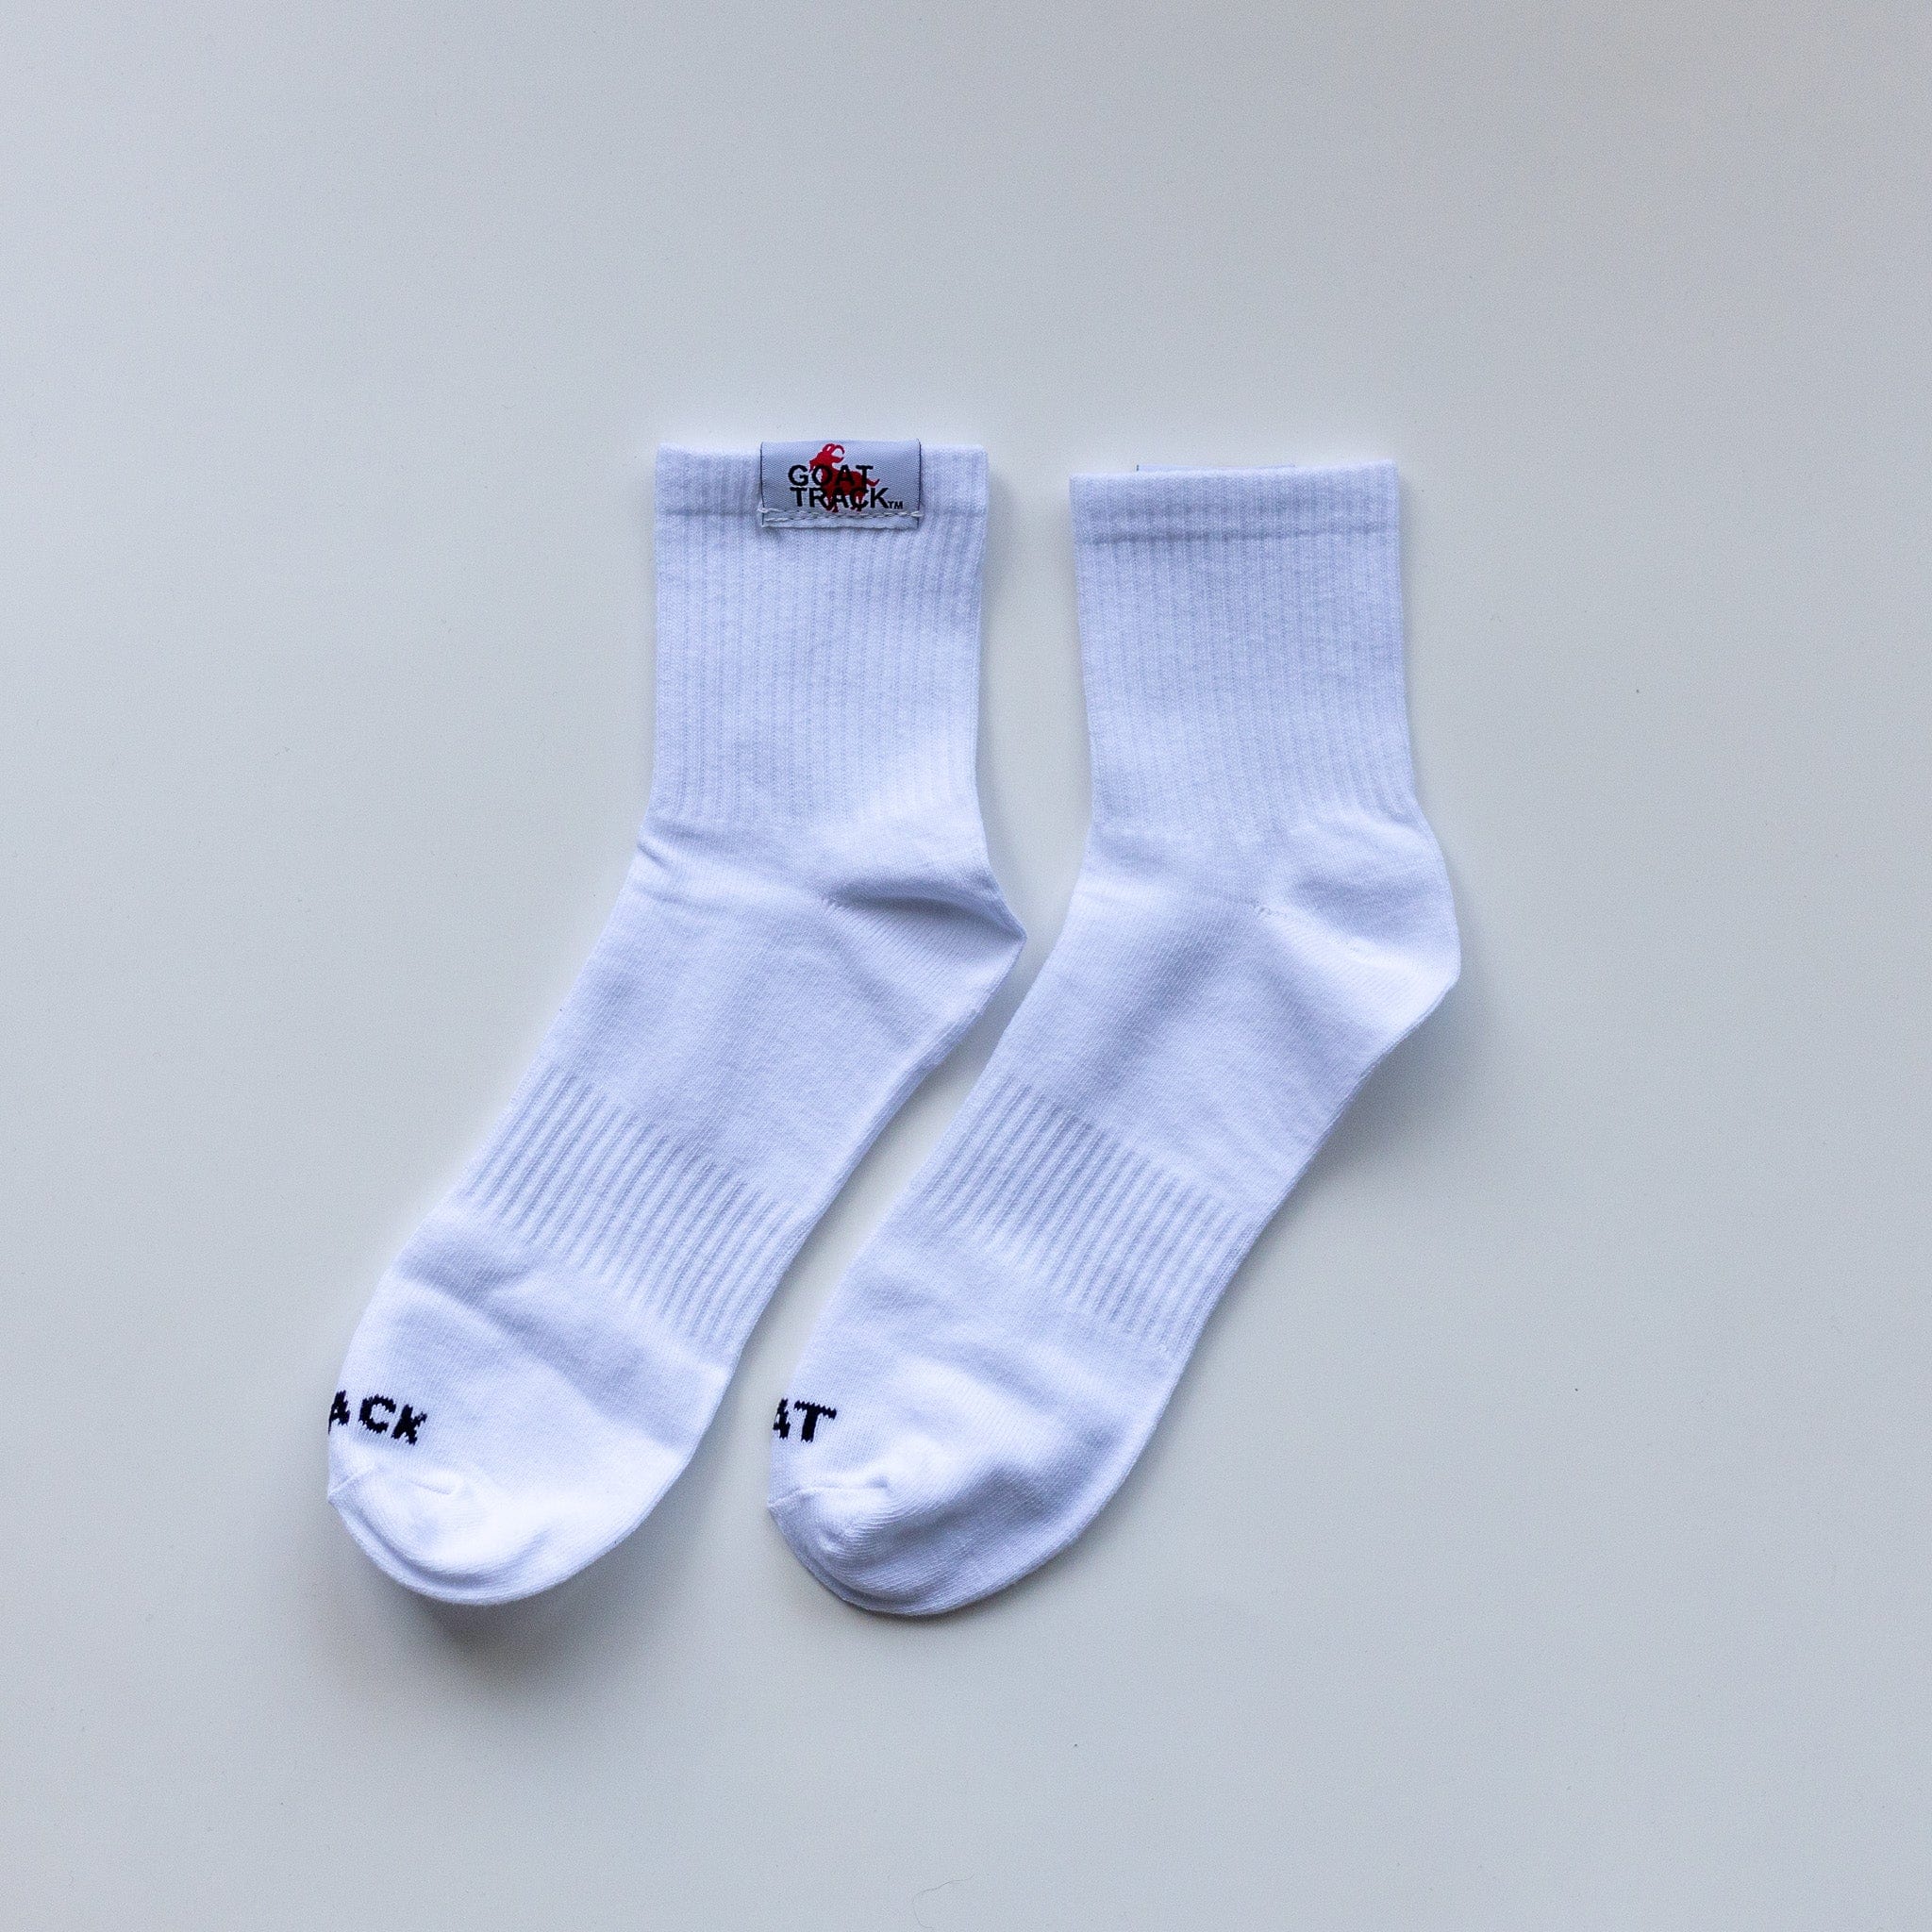 GT Mid Cut Socks socks Canada-Golf-Lifestyle-Clothing-Brand